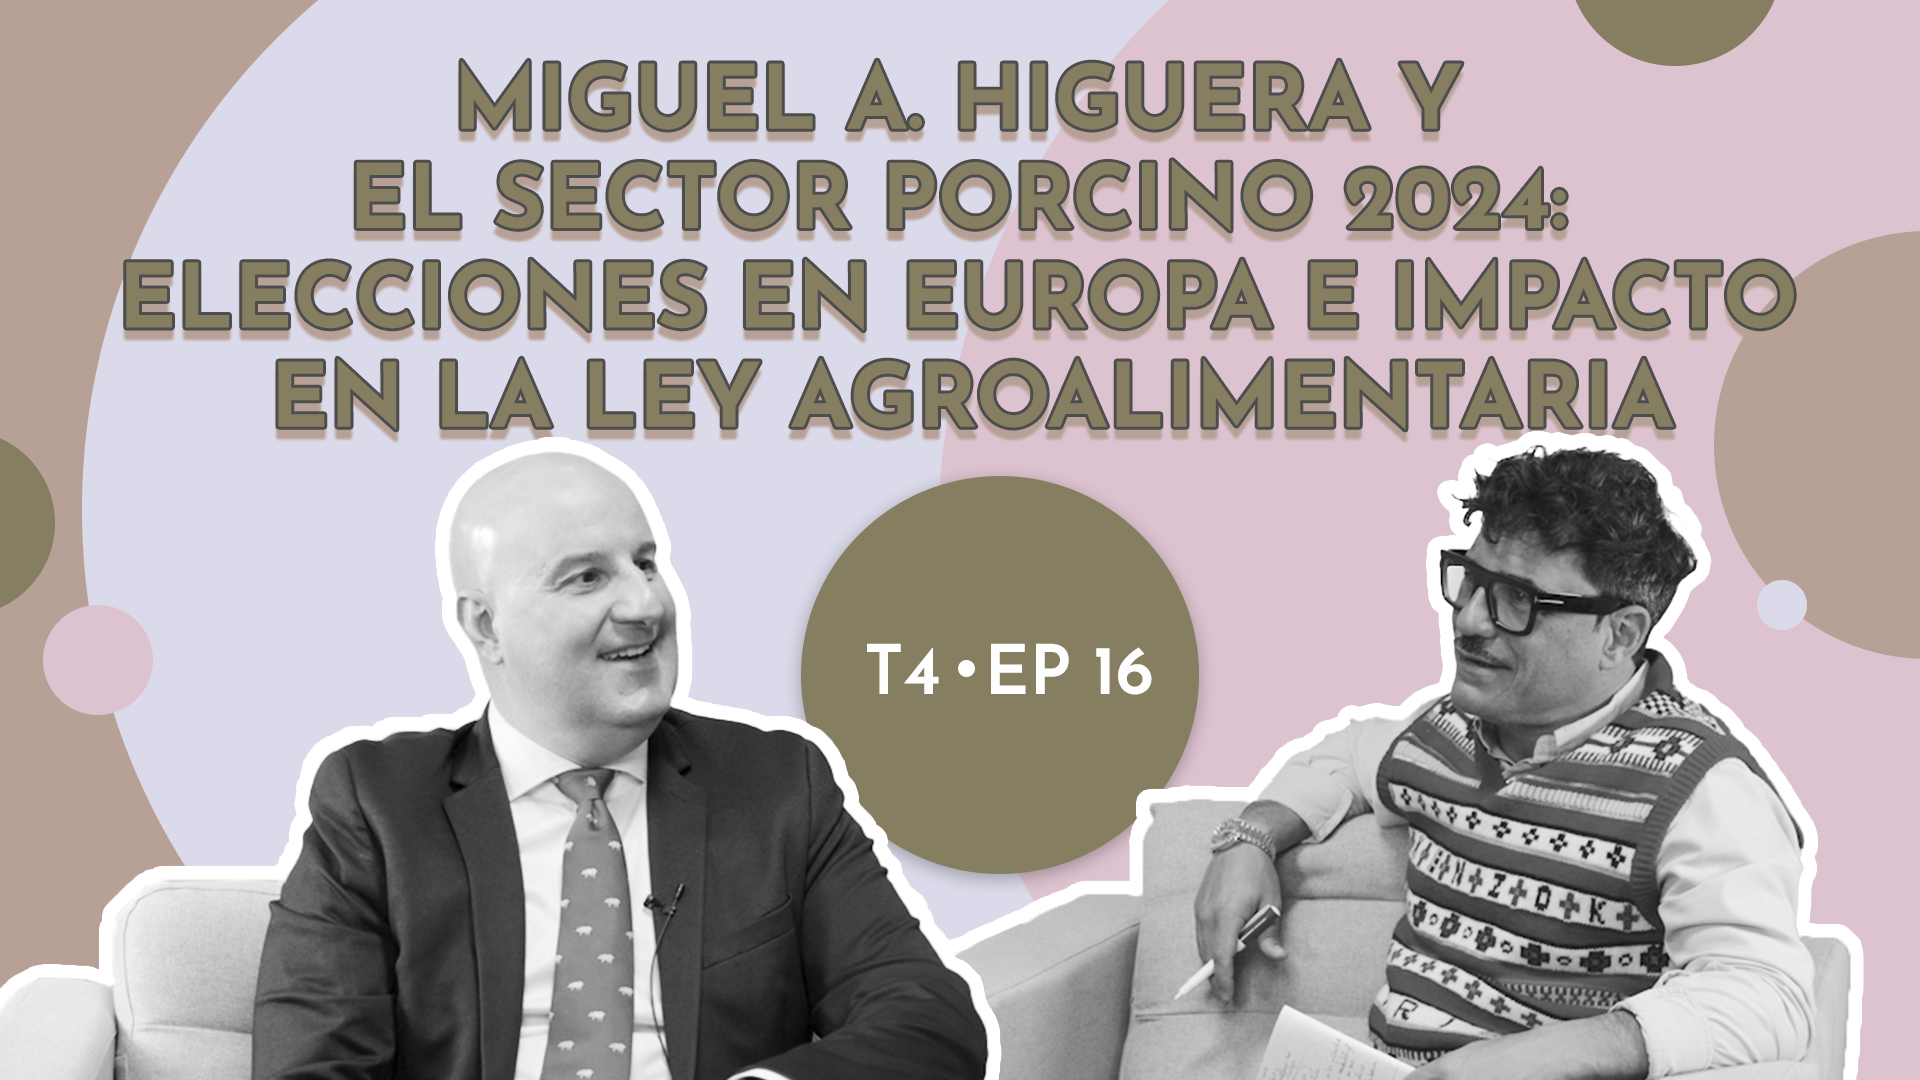 Miguel A. Higuera y el sector porcino 2024: elecciones en Europa e impacto en la ley agroalimentaria